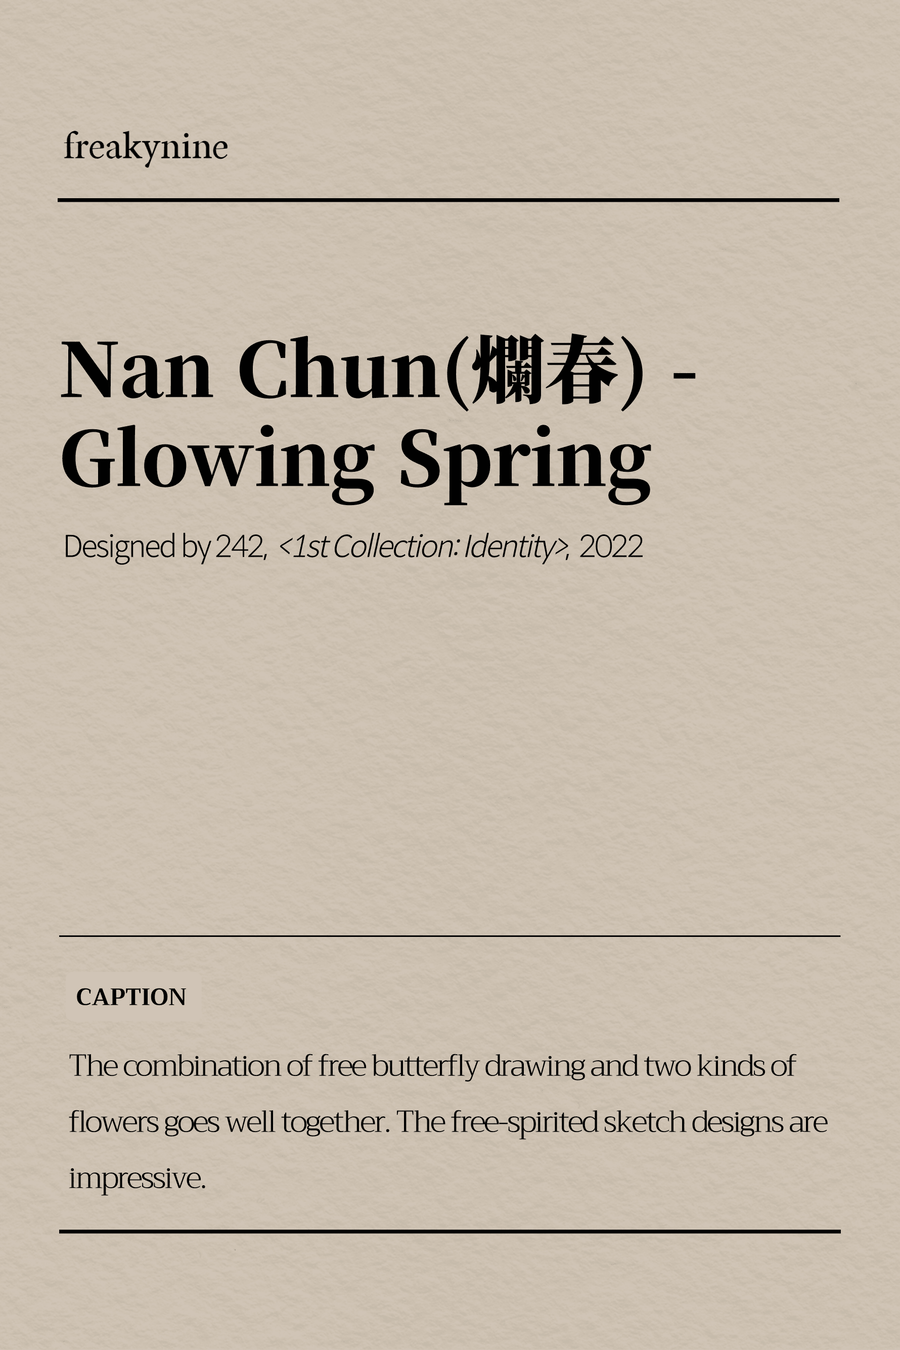 (242) Nan Chun(爛春) - Glowing Spring (2EA) - freakynine